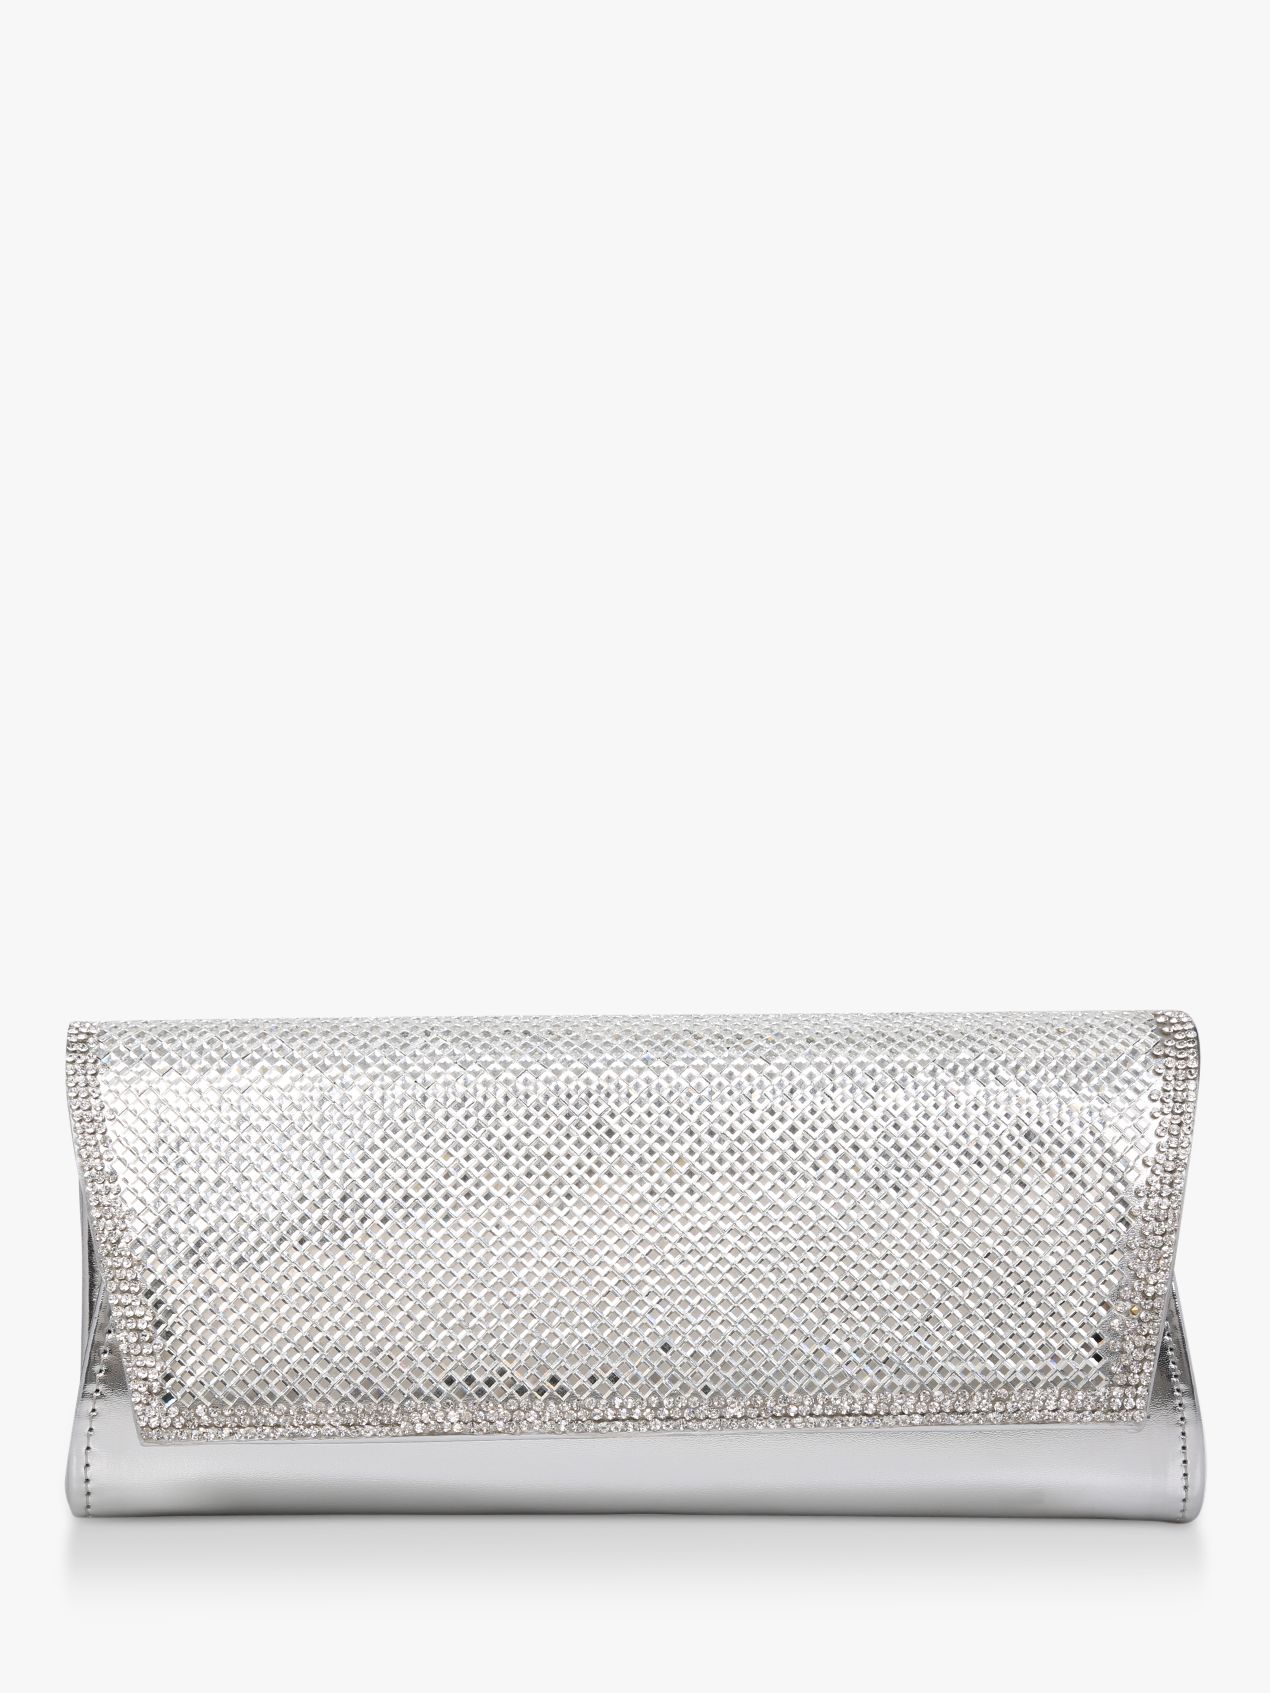 Carvela Ocean Embellished Clutch Bag, Silver